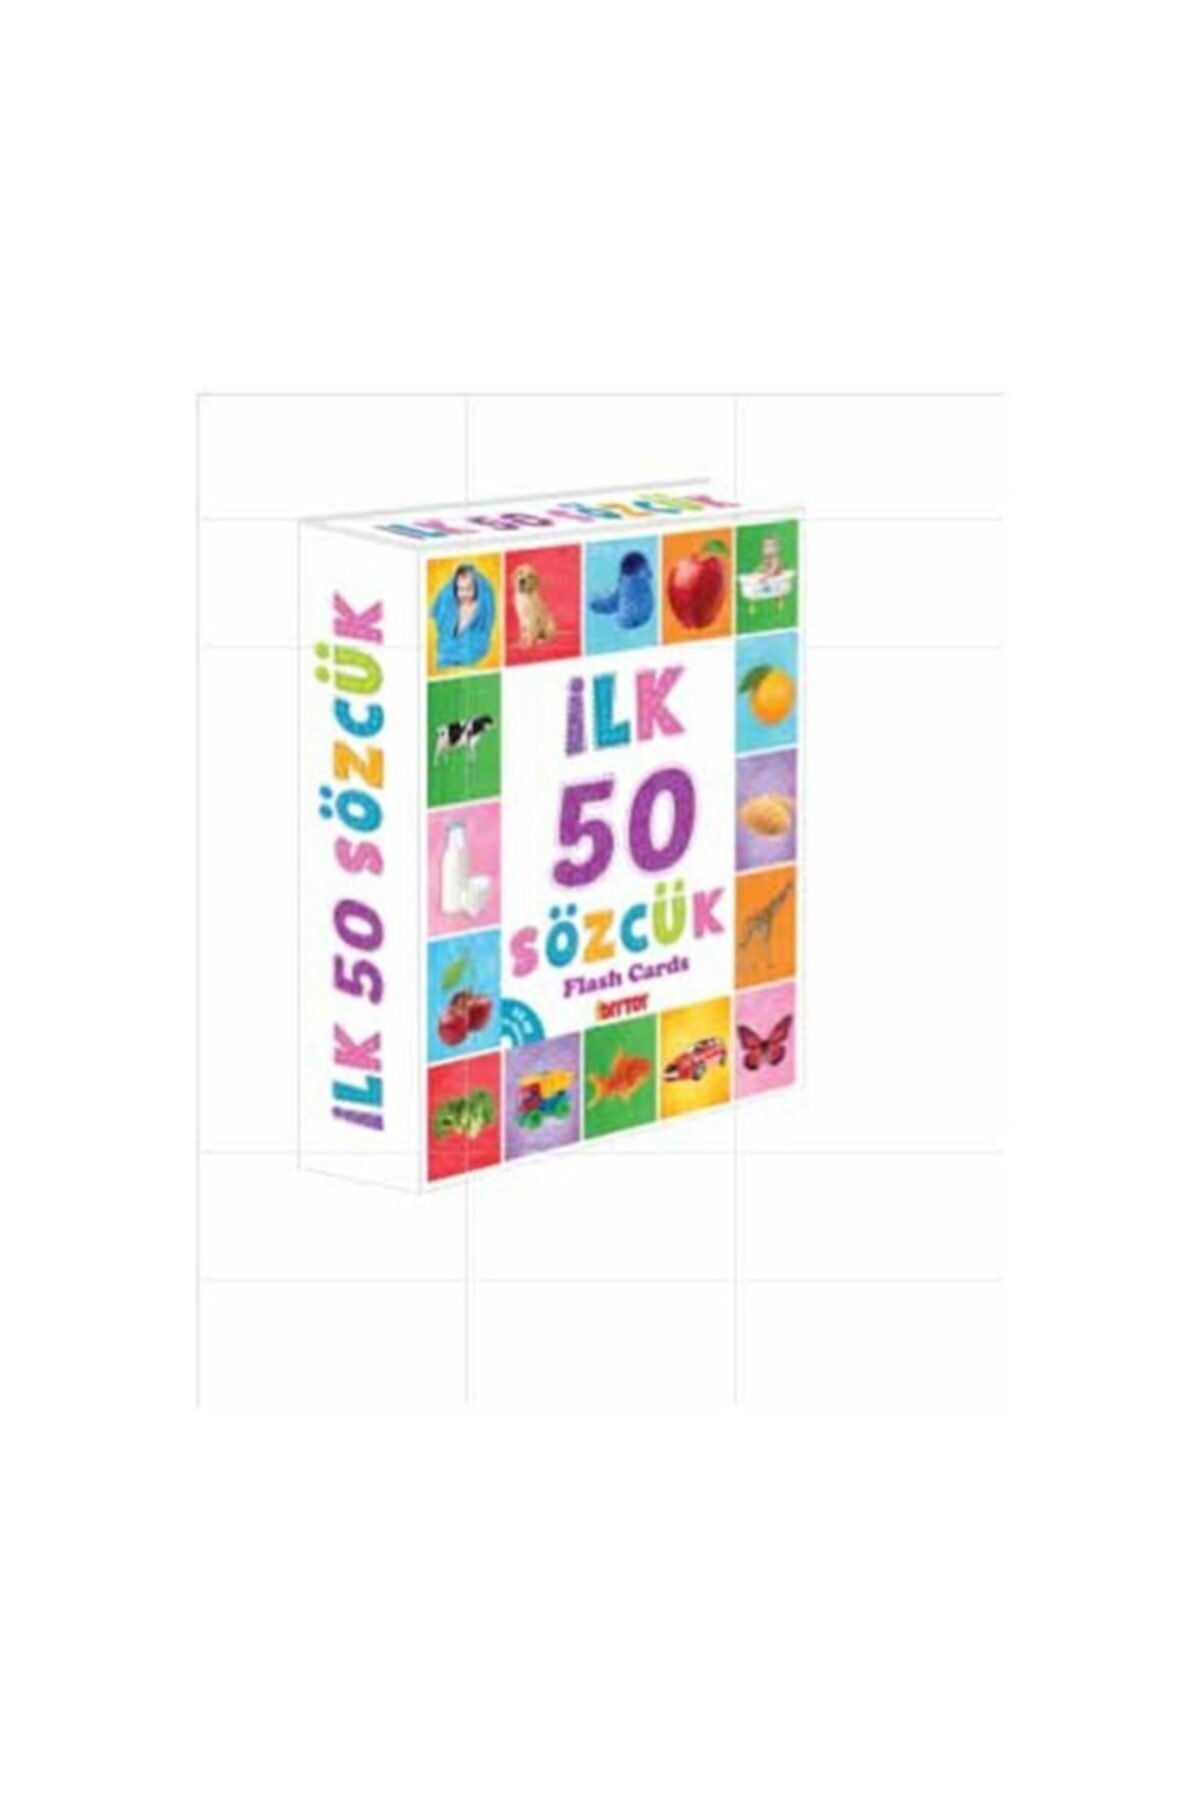 Diytoy Ilk 50 Sözcük Flash Cards Hafıza Kartları Orijinal Ürün